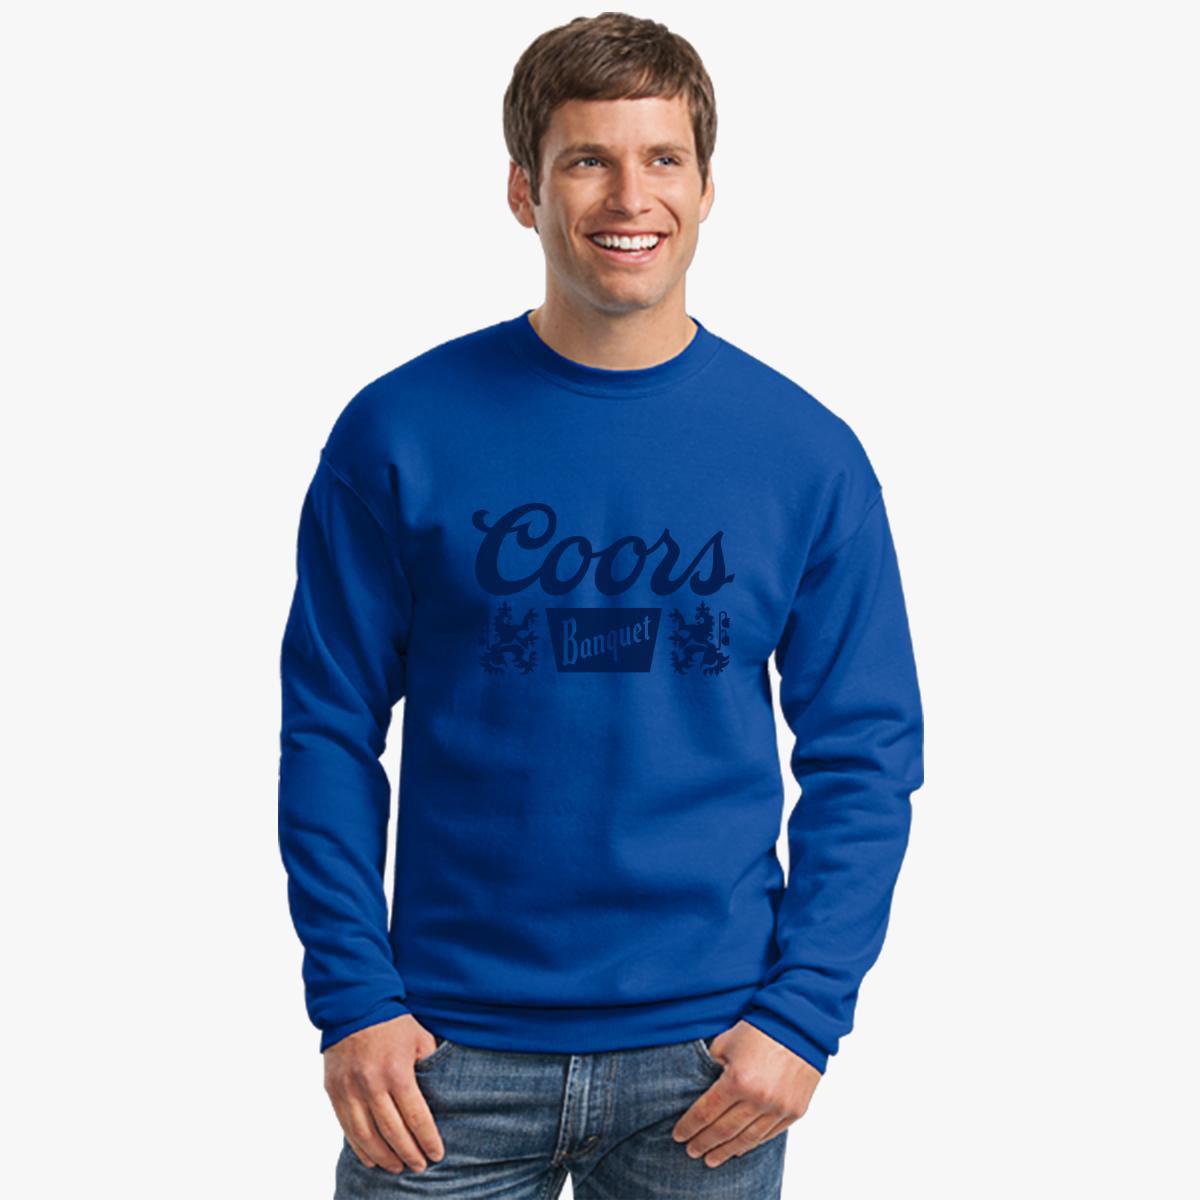 Coors Banquet Crewneck Sweatshirt - Customon